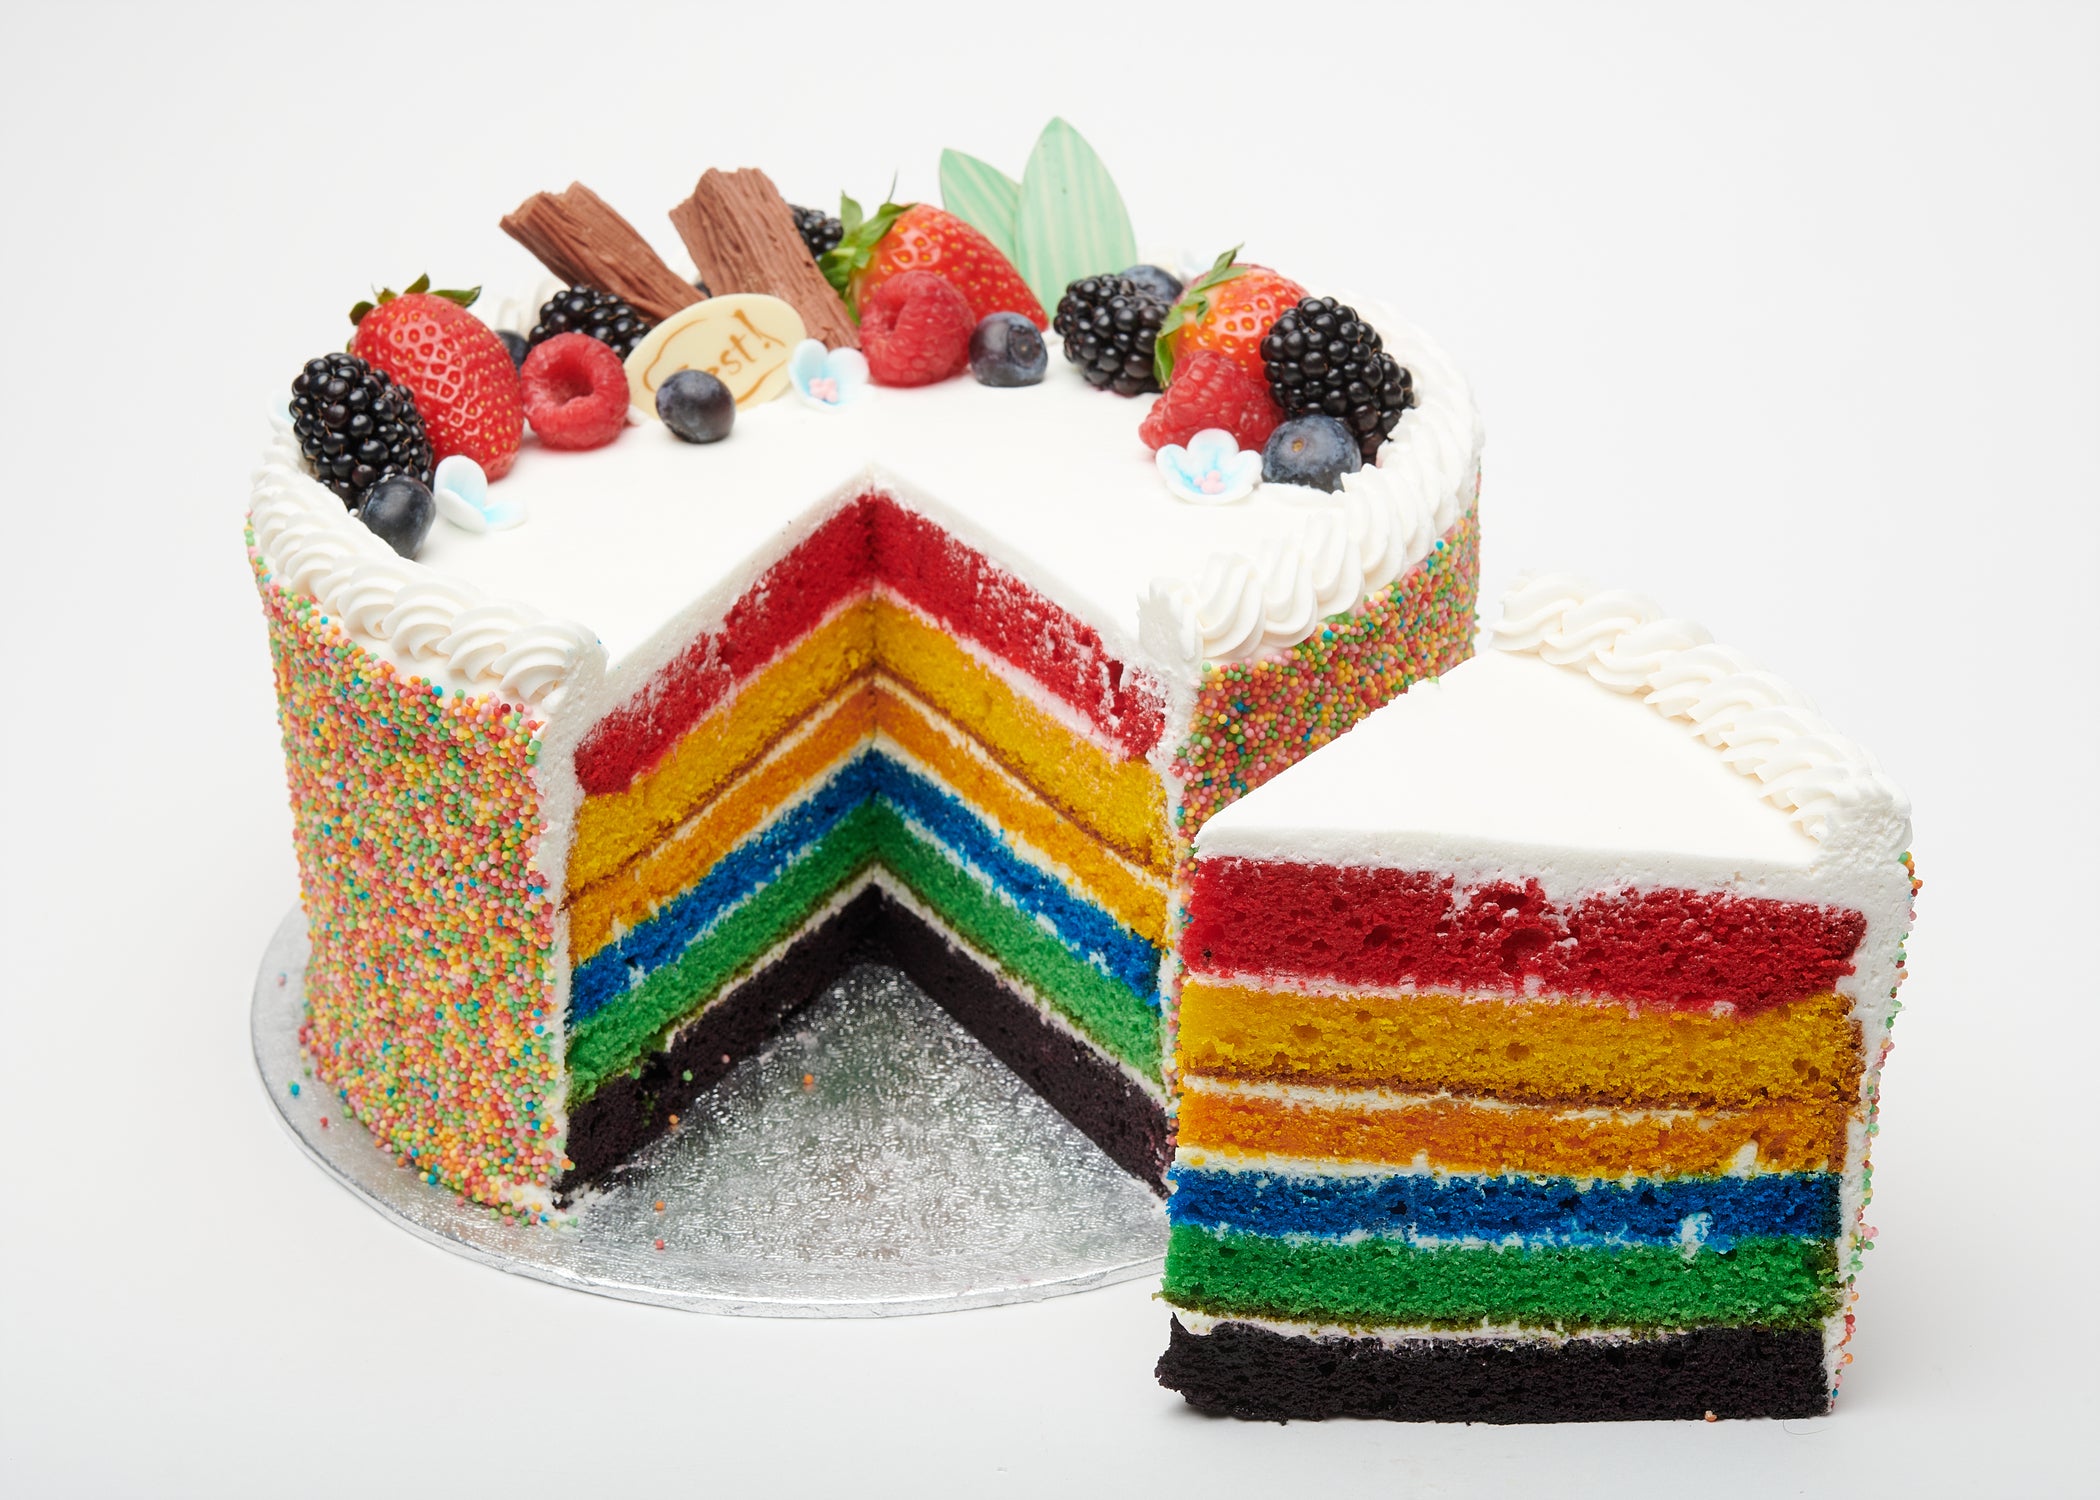 Rainbow cake stepbystep tutorial  Spatula Desserts